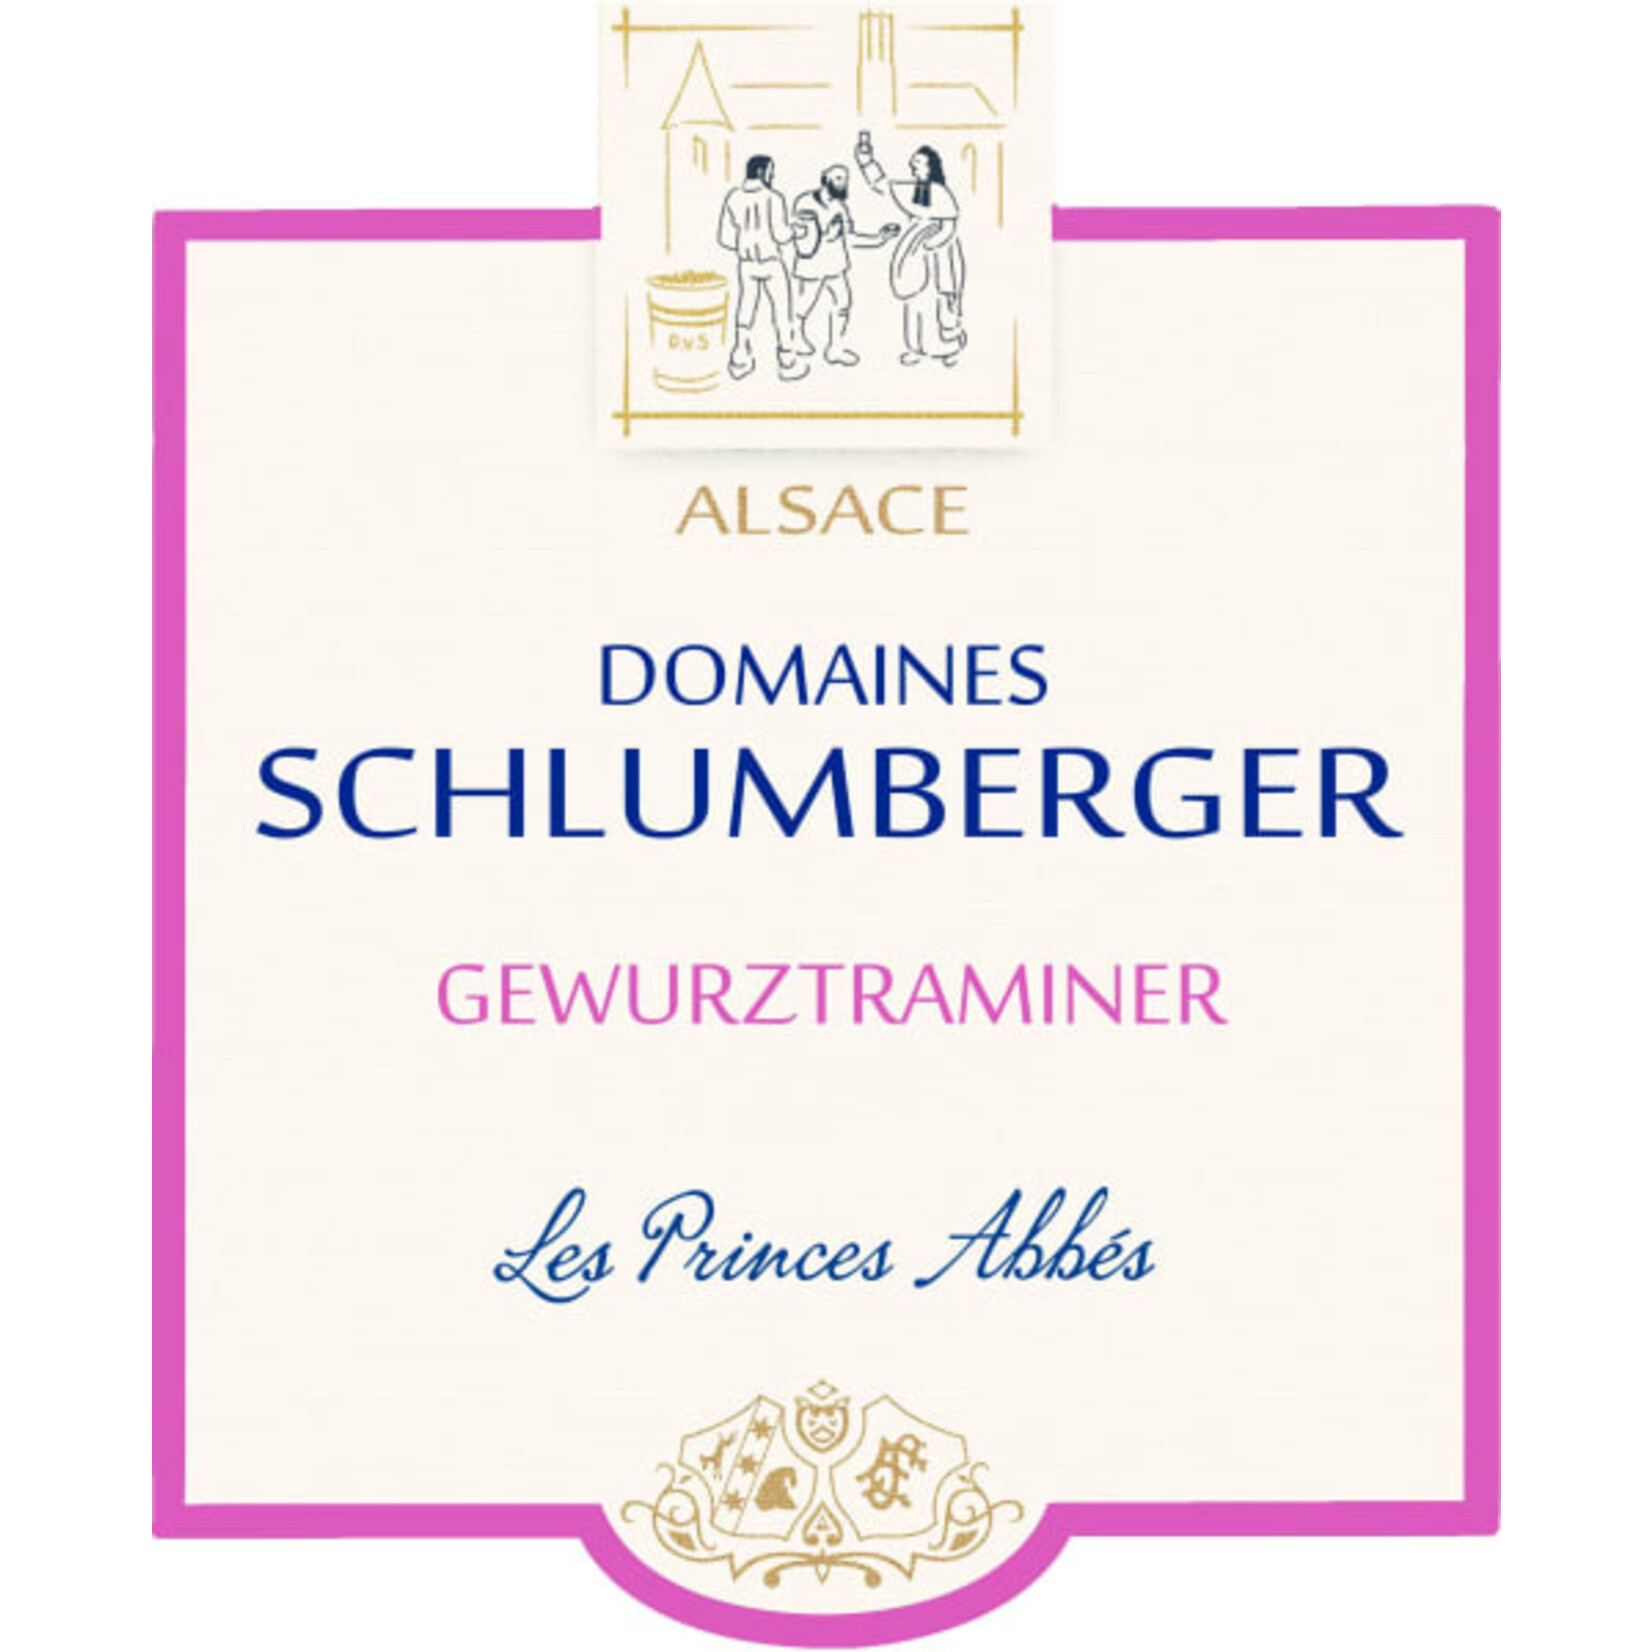 Domaines Schlumberger Domaines Schlumberger Gewurztraminer Les Princes Abbés 2020  France